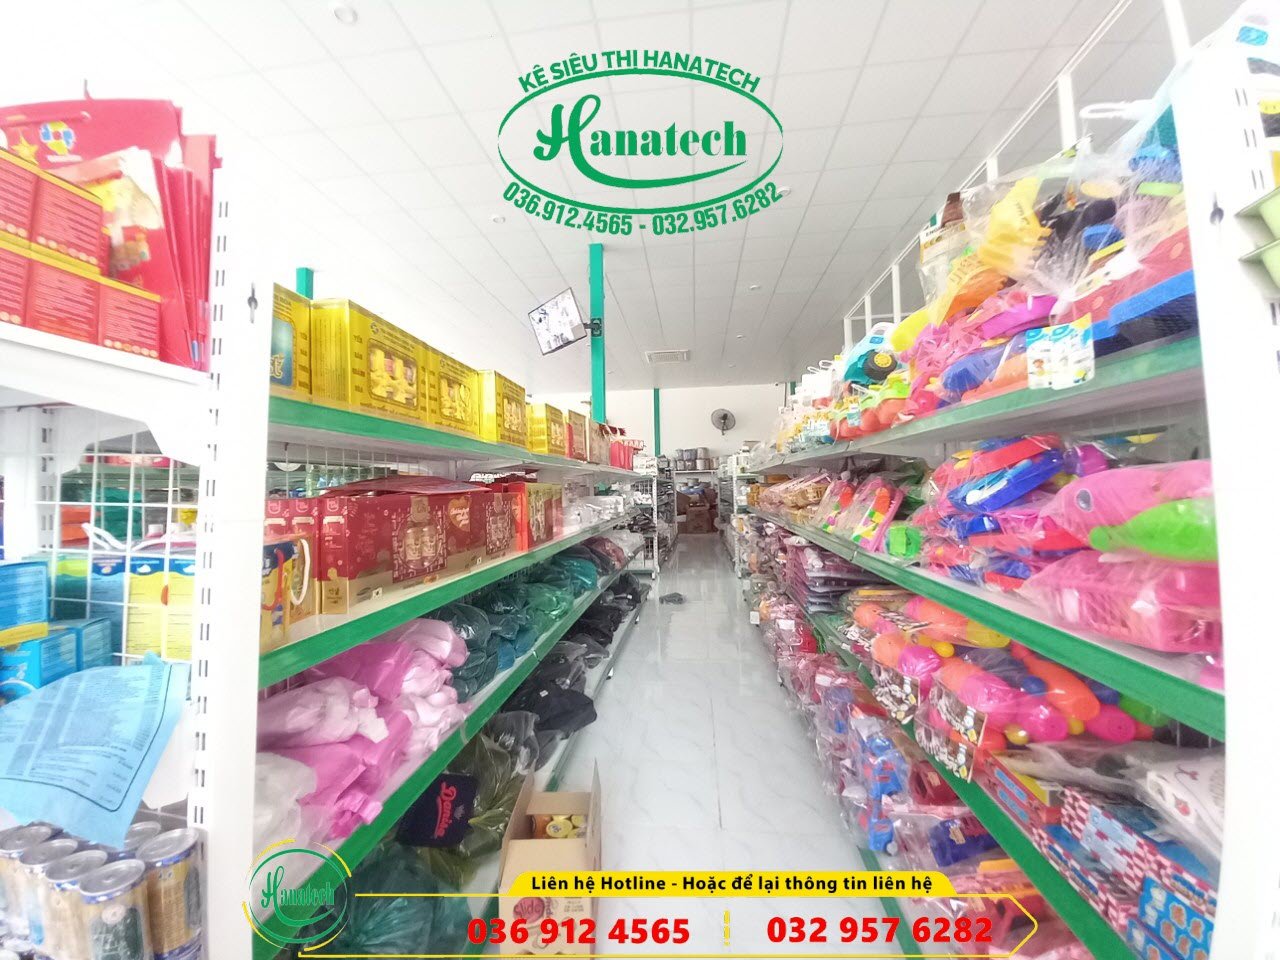 giá kệ siêu thị trưng bày cho cửa hàng tạp hóa tại Trảng Bom Đồng Nai